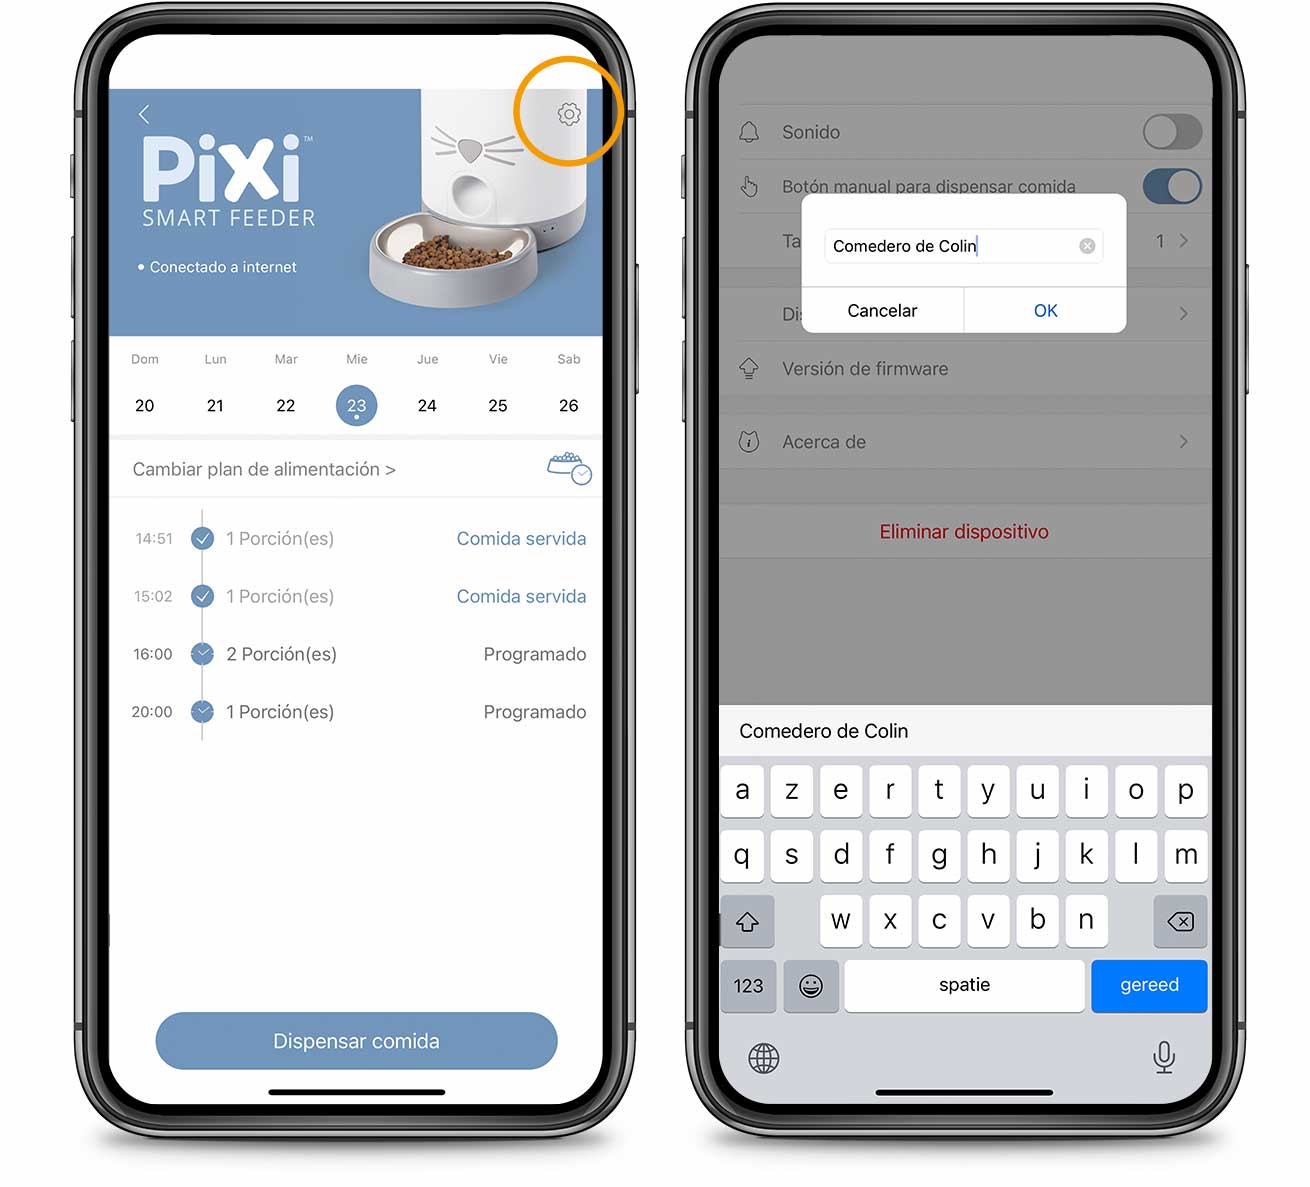 Renombrar producto en la app PIXI